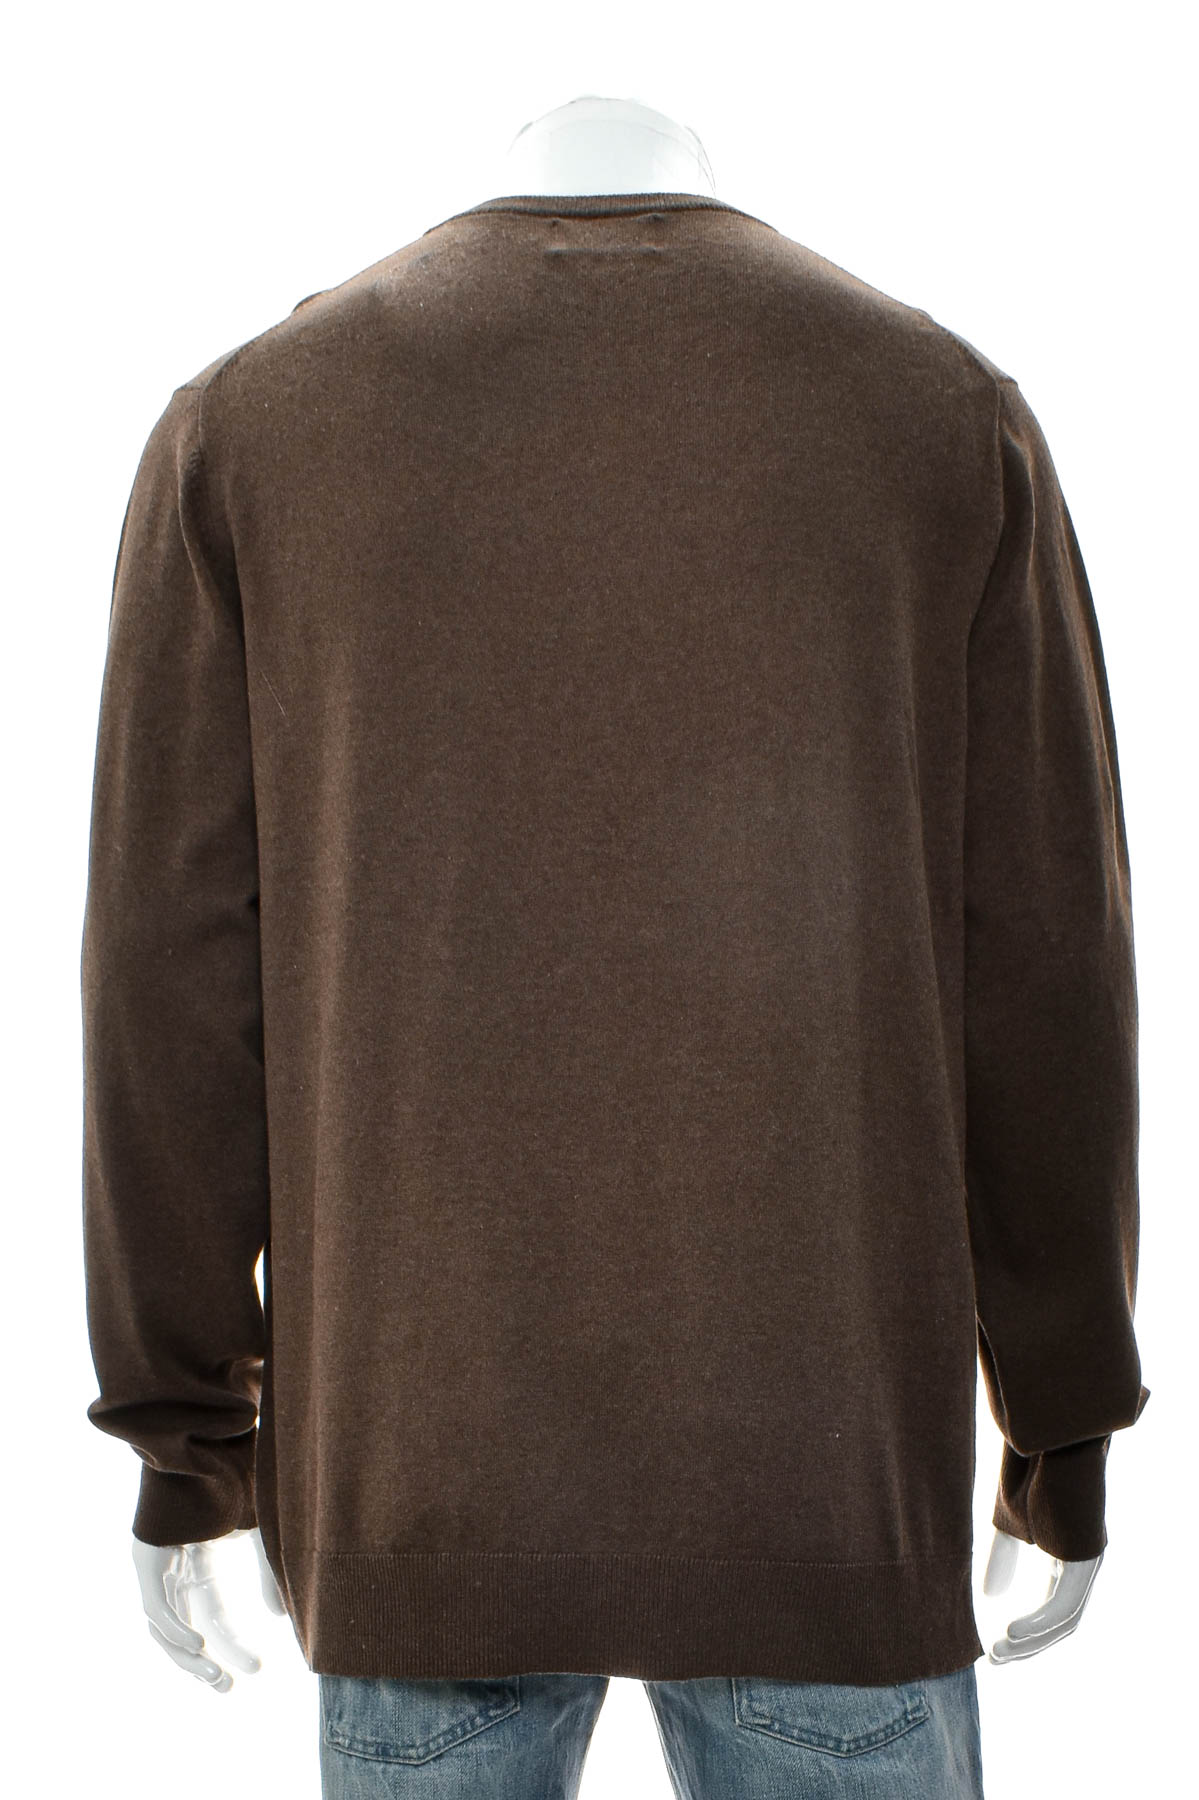 Men's sweater - OLD NAVY - 1